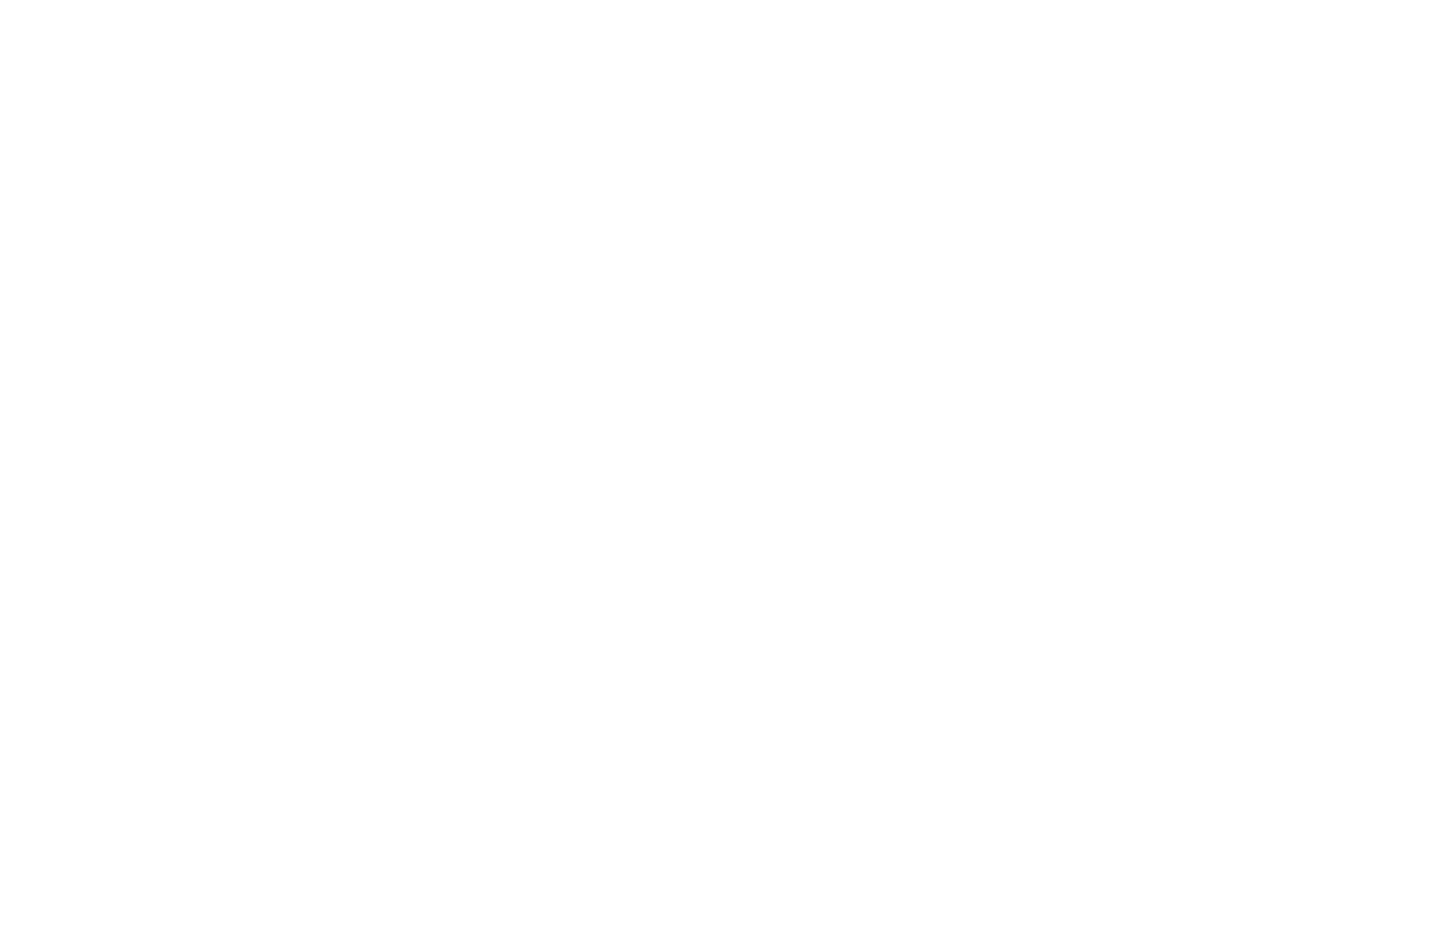 Ленты для бейджей с логотипом